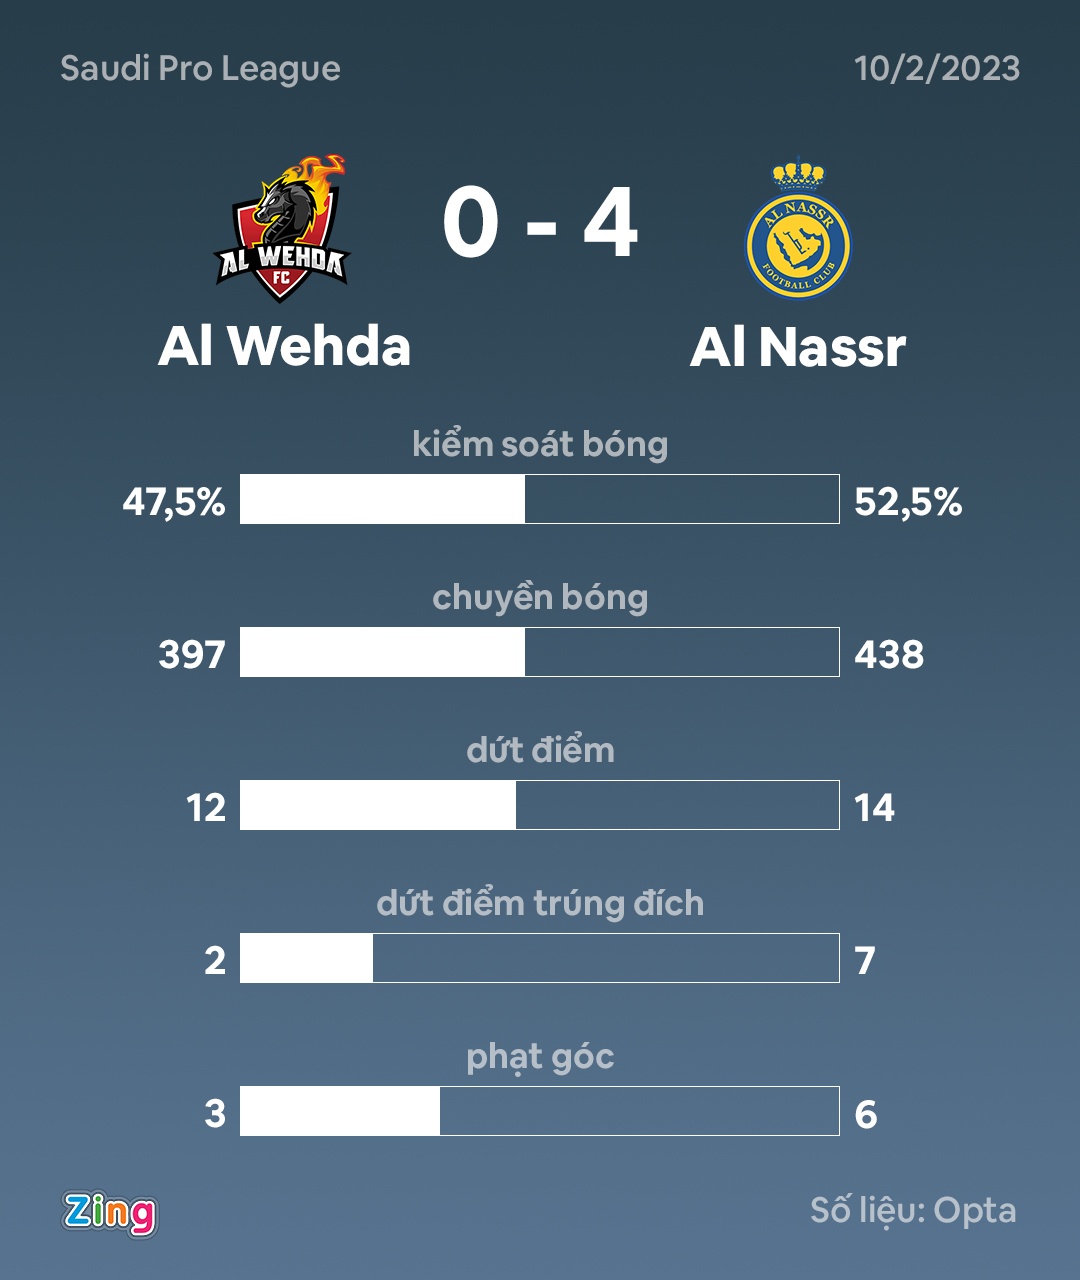 Ronaldo ghi 4 bàn trong trận thắng của Al Nassr - Ảnh 4.